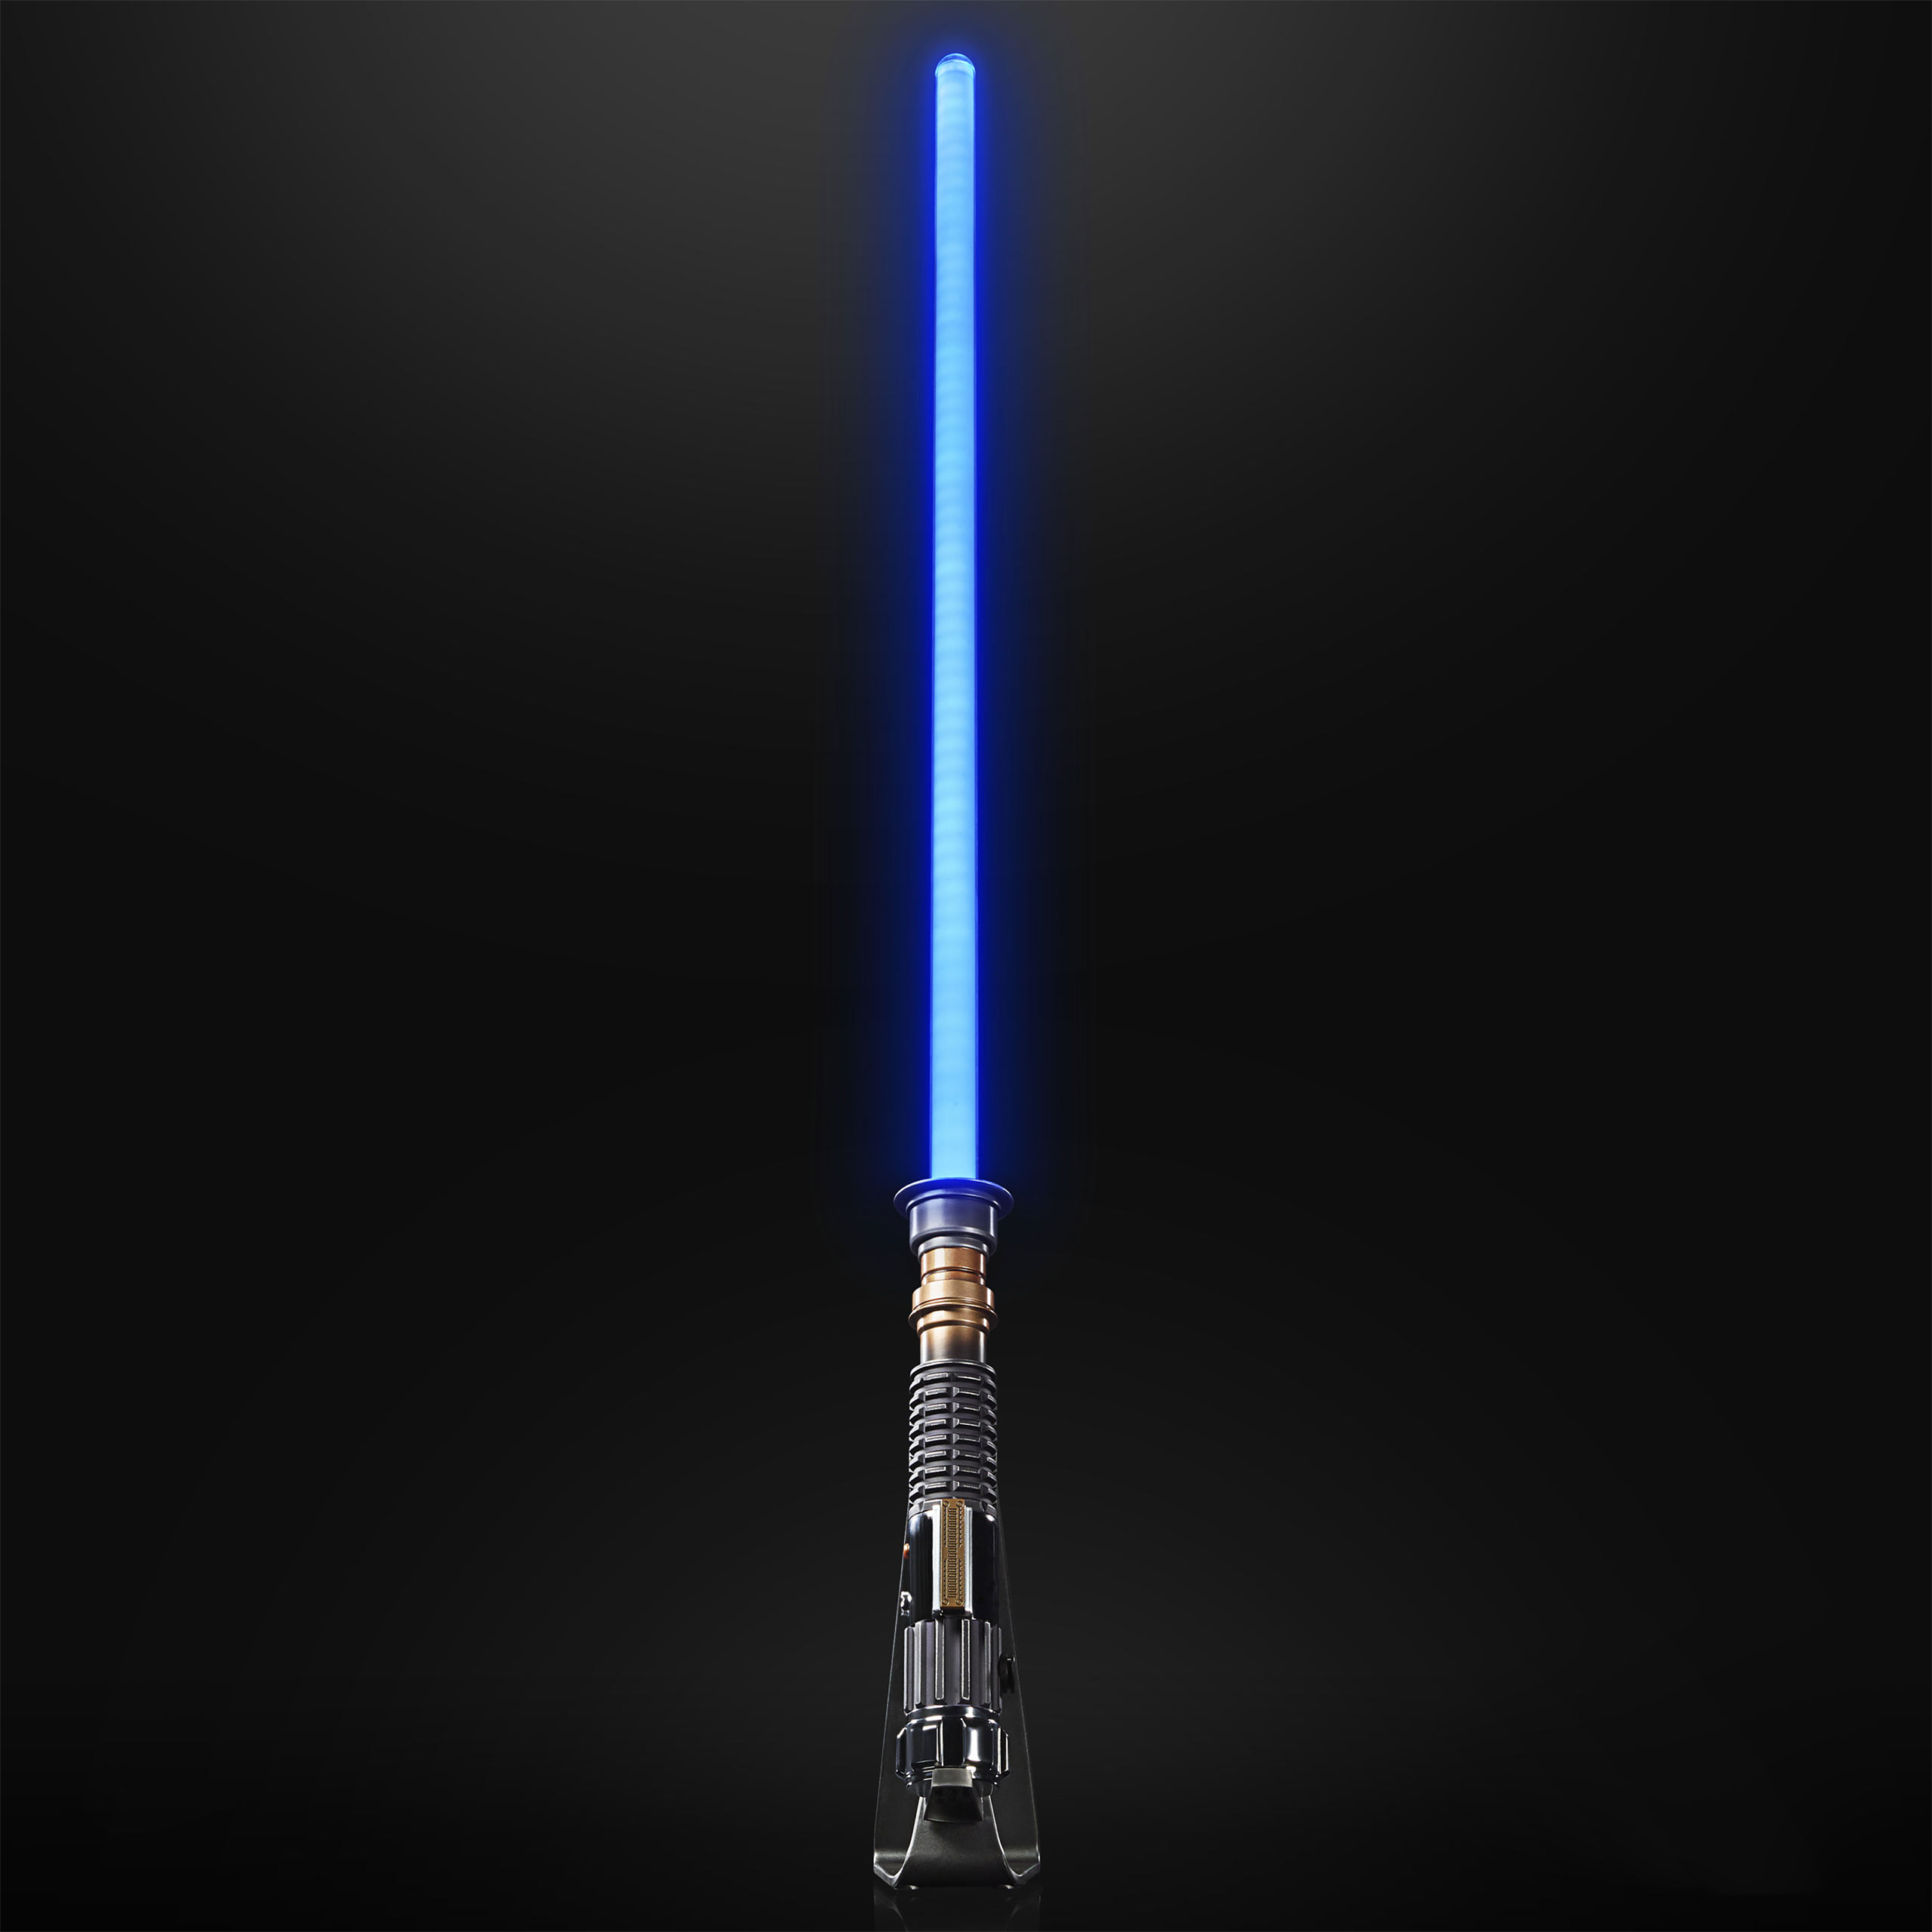 Obi-Wan Kenobi Force FX Elite Lichtschwert - Star Wars